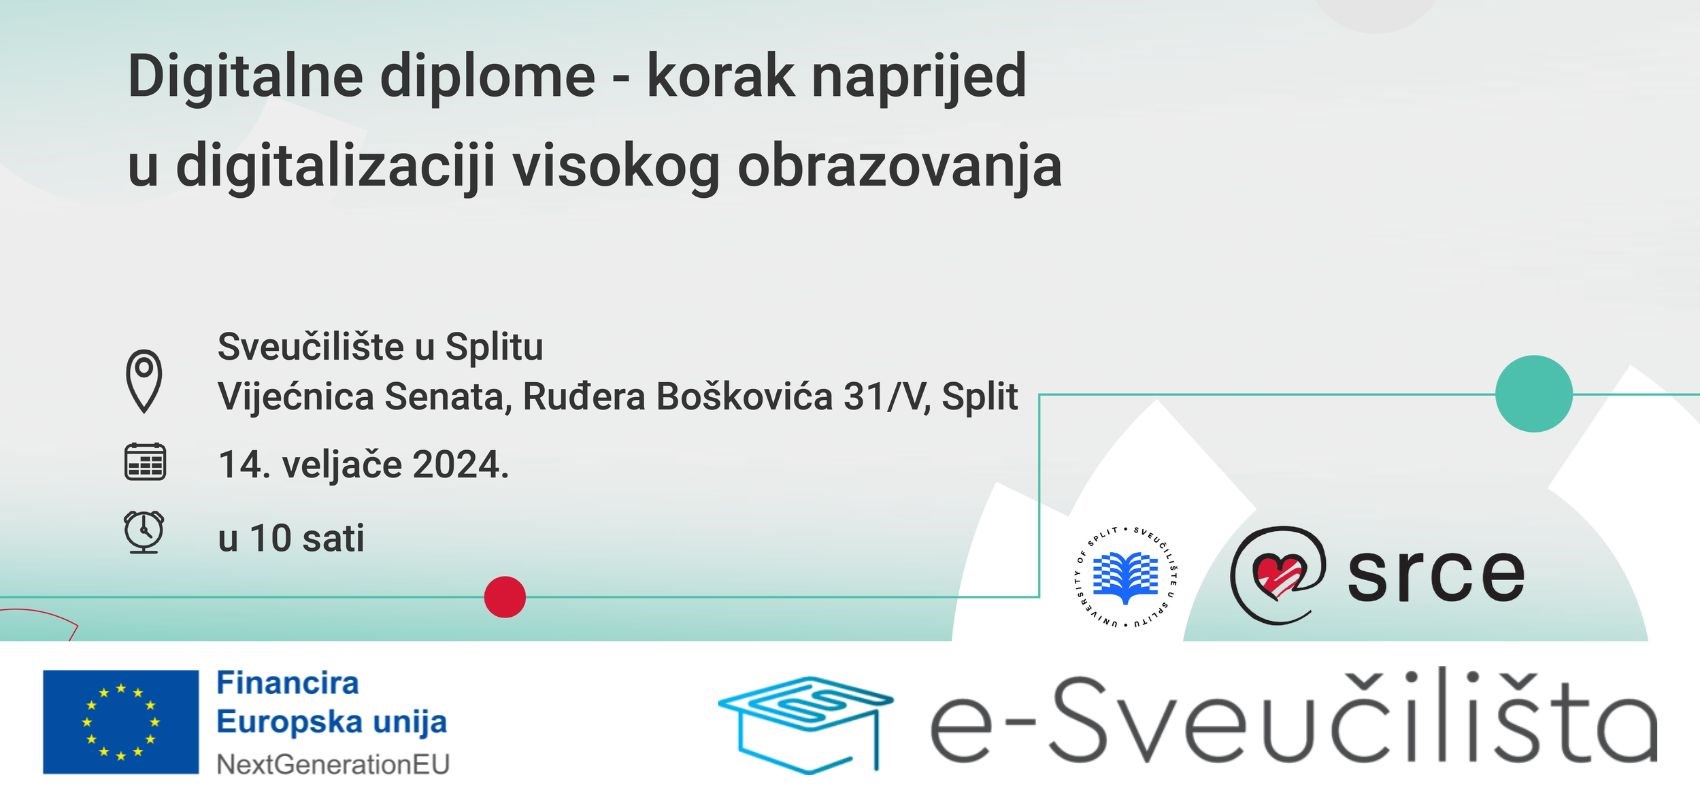 Digitalne diplome - korak naprijed u digitalizaciji visokog obrazovanja na Sveučilištu u Splitu